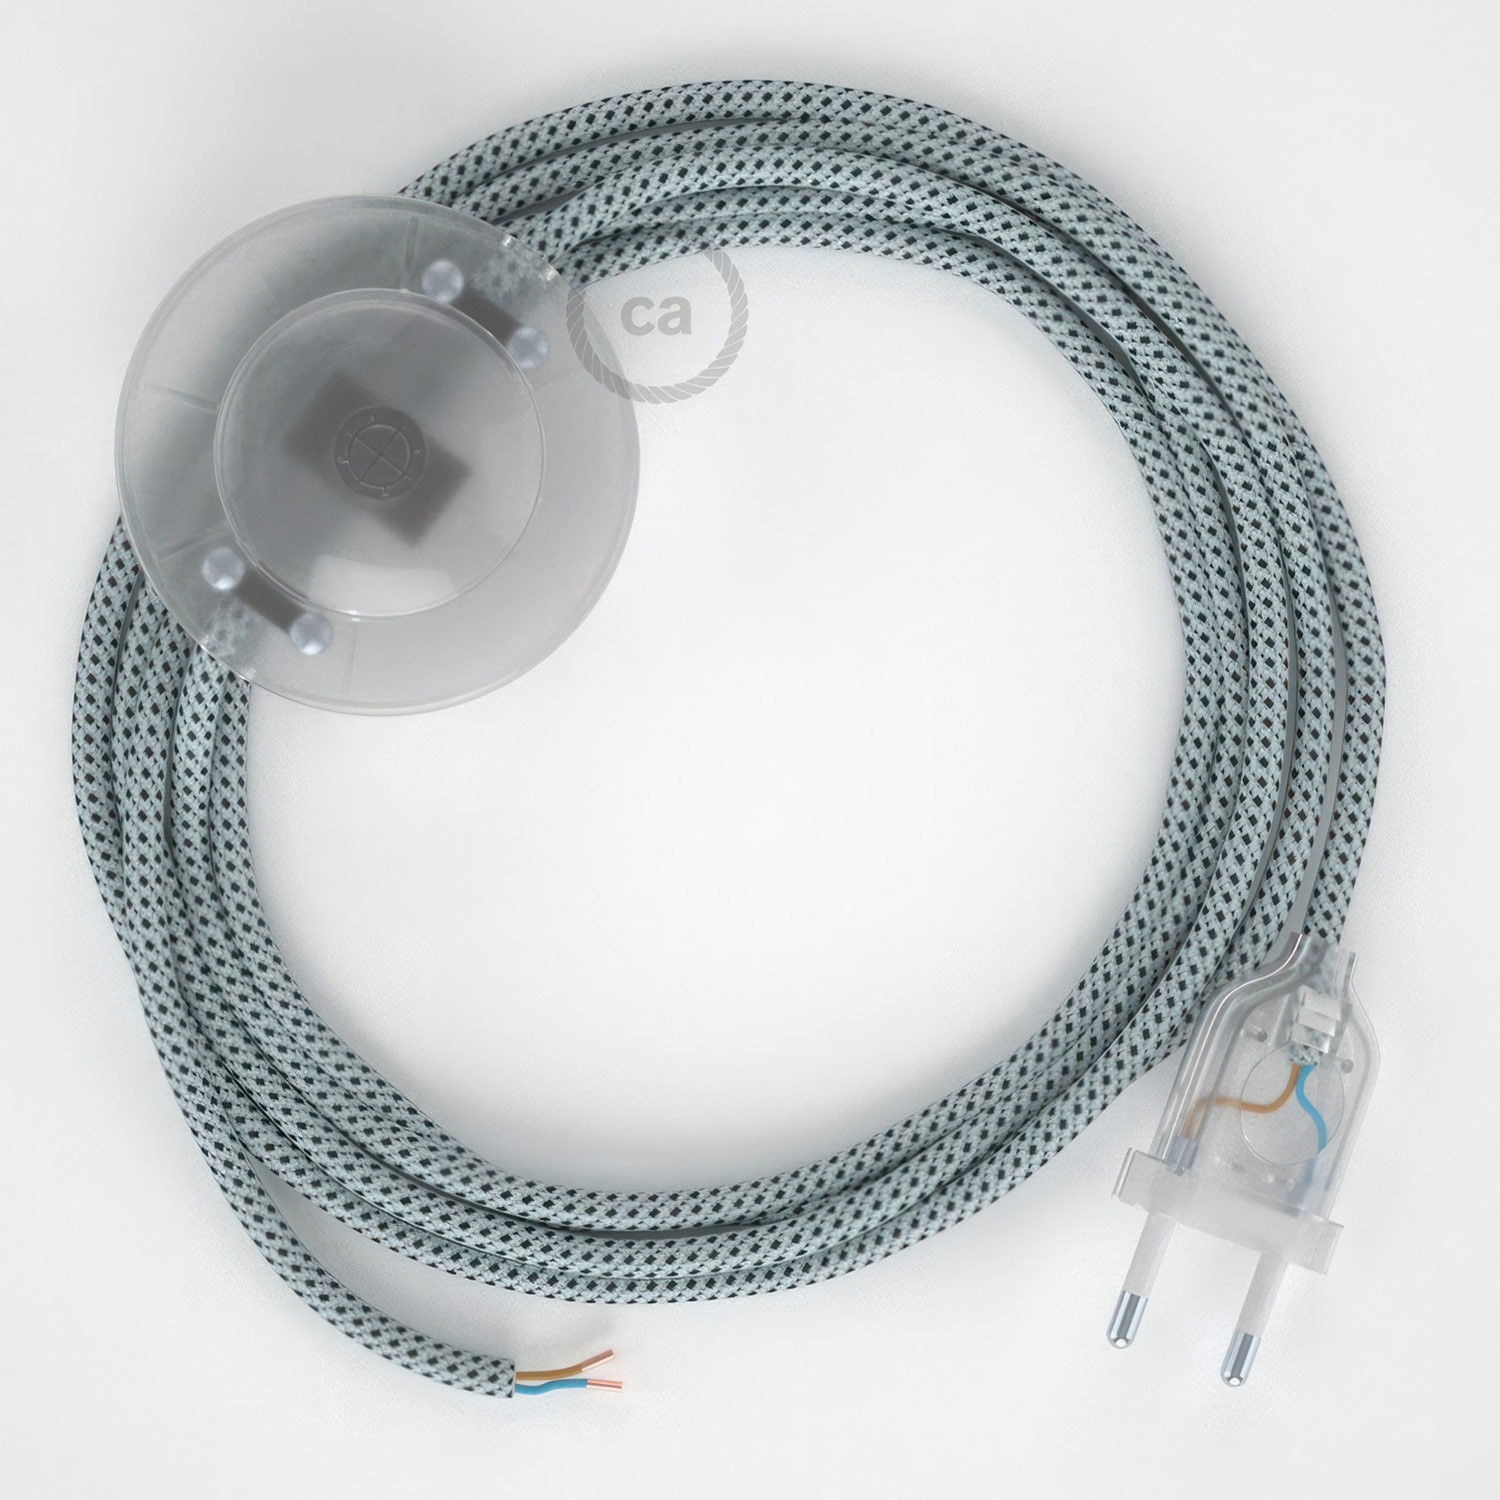 Cableado para lámpara de pie, cable RT14 Efecto Seda Stracciatella 3 m. Elige tu el color de la clavija y del interruptor!